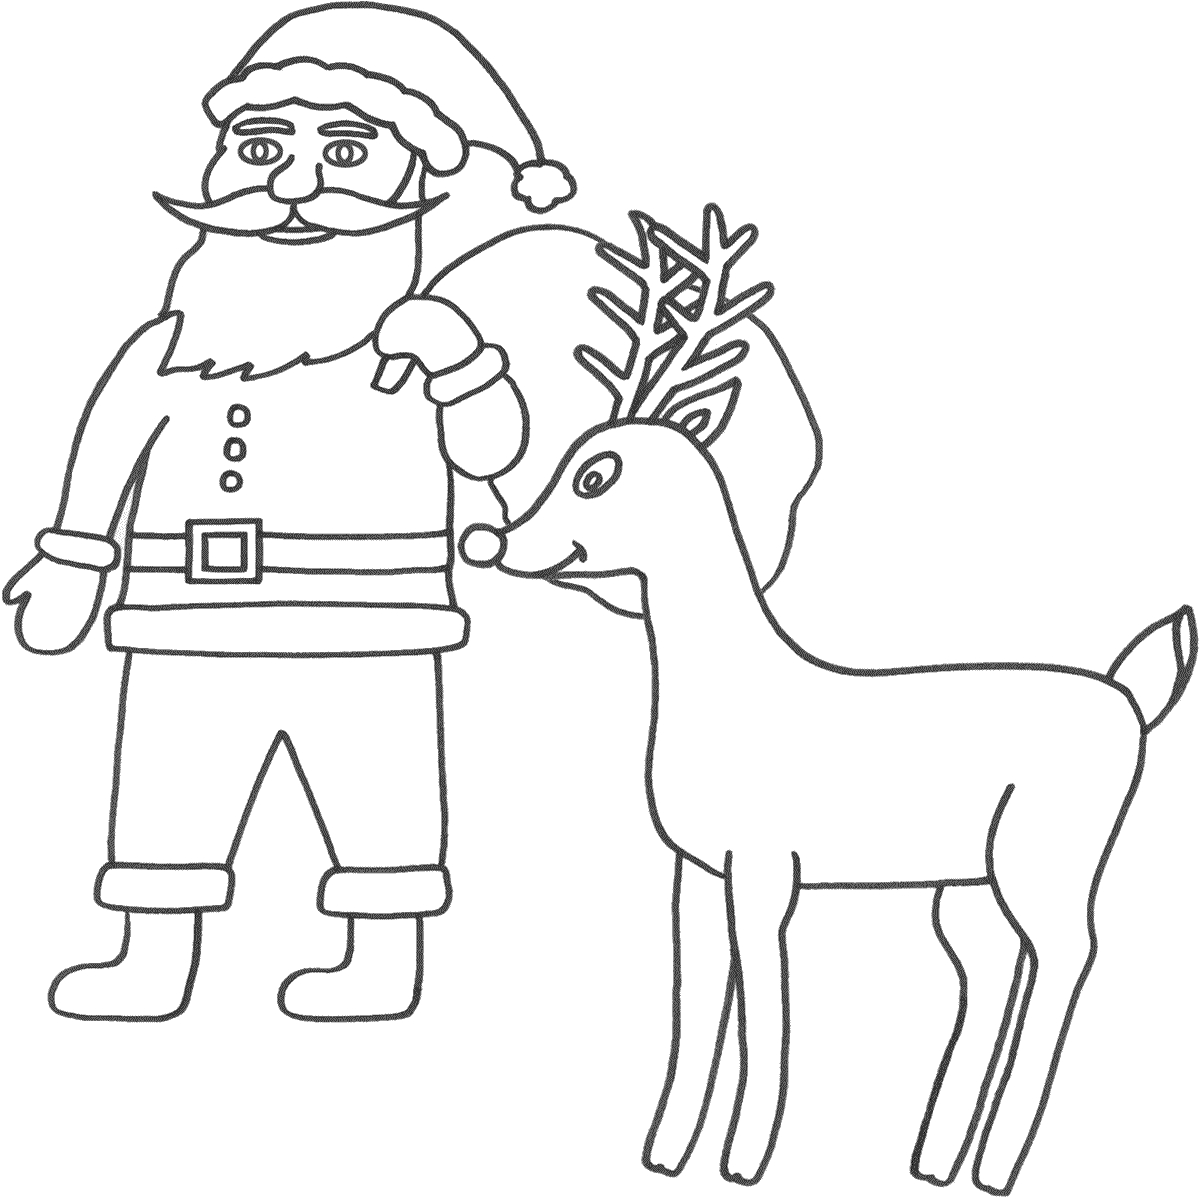 Santa And Rudolph Coloring Pages Santa And Rudolph Coloring Pages Train Rudolph The Red Nosed